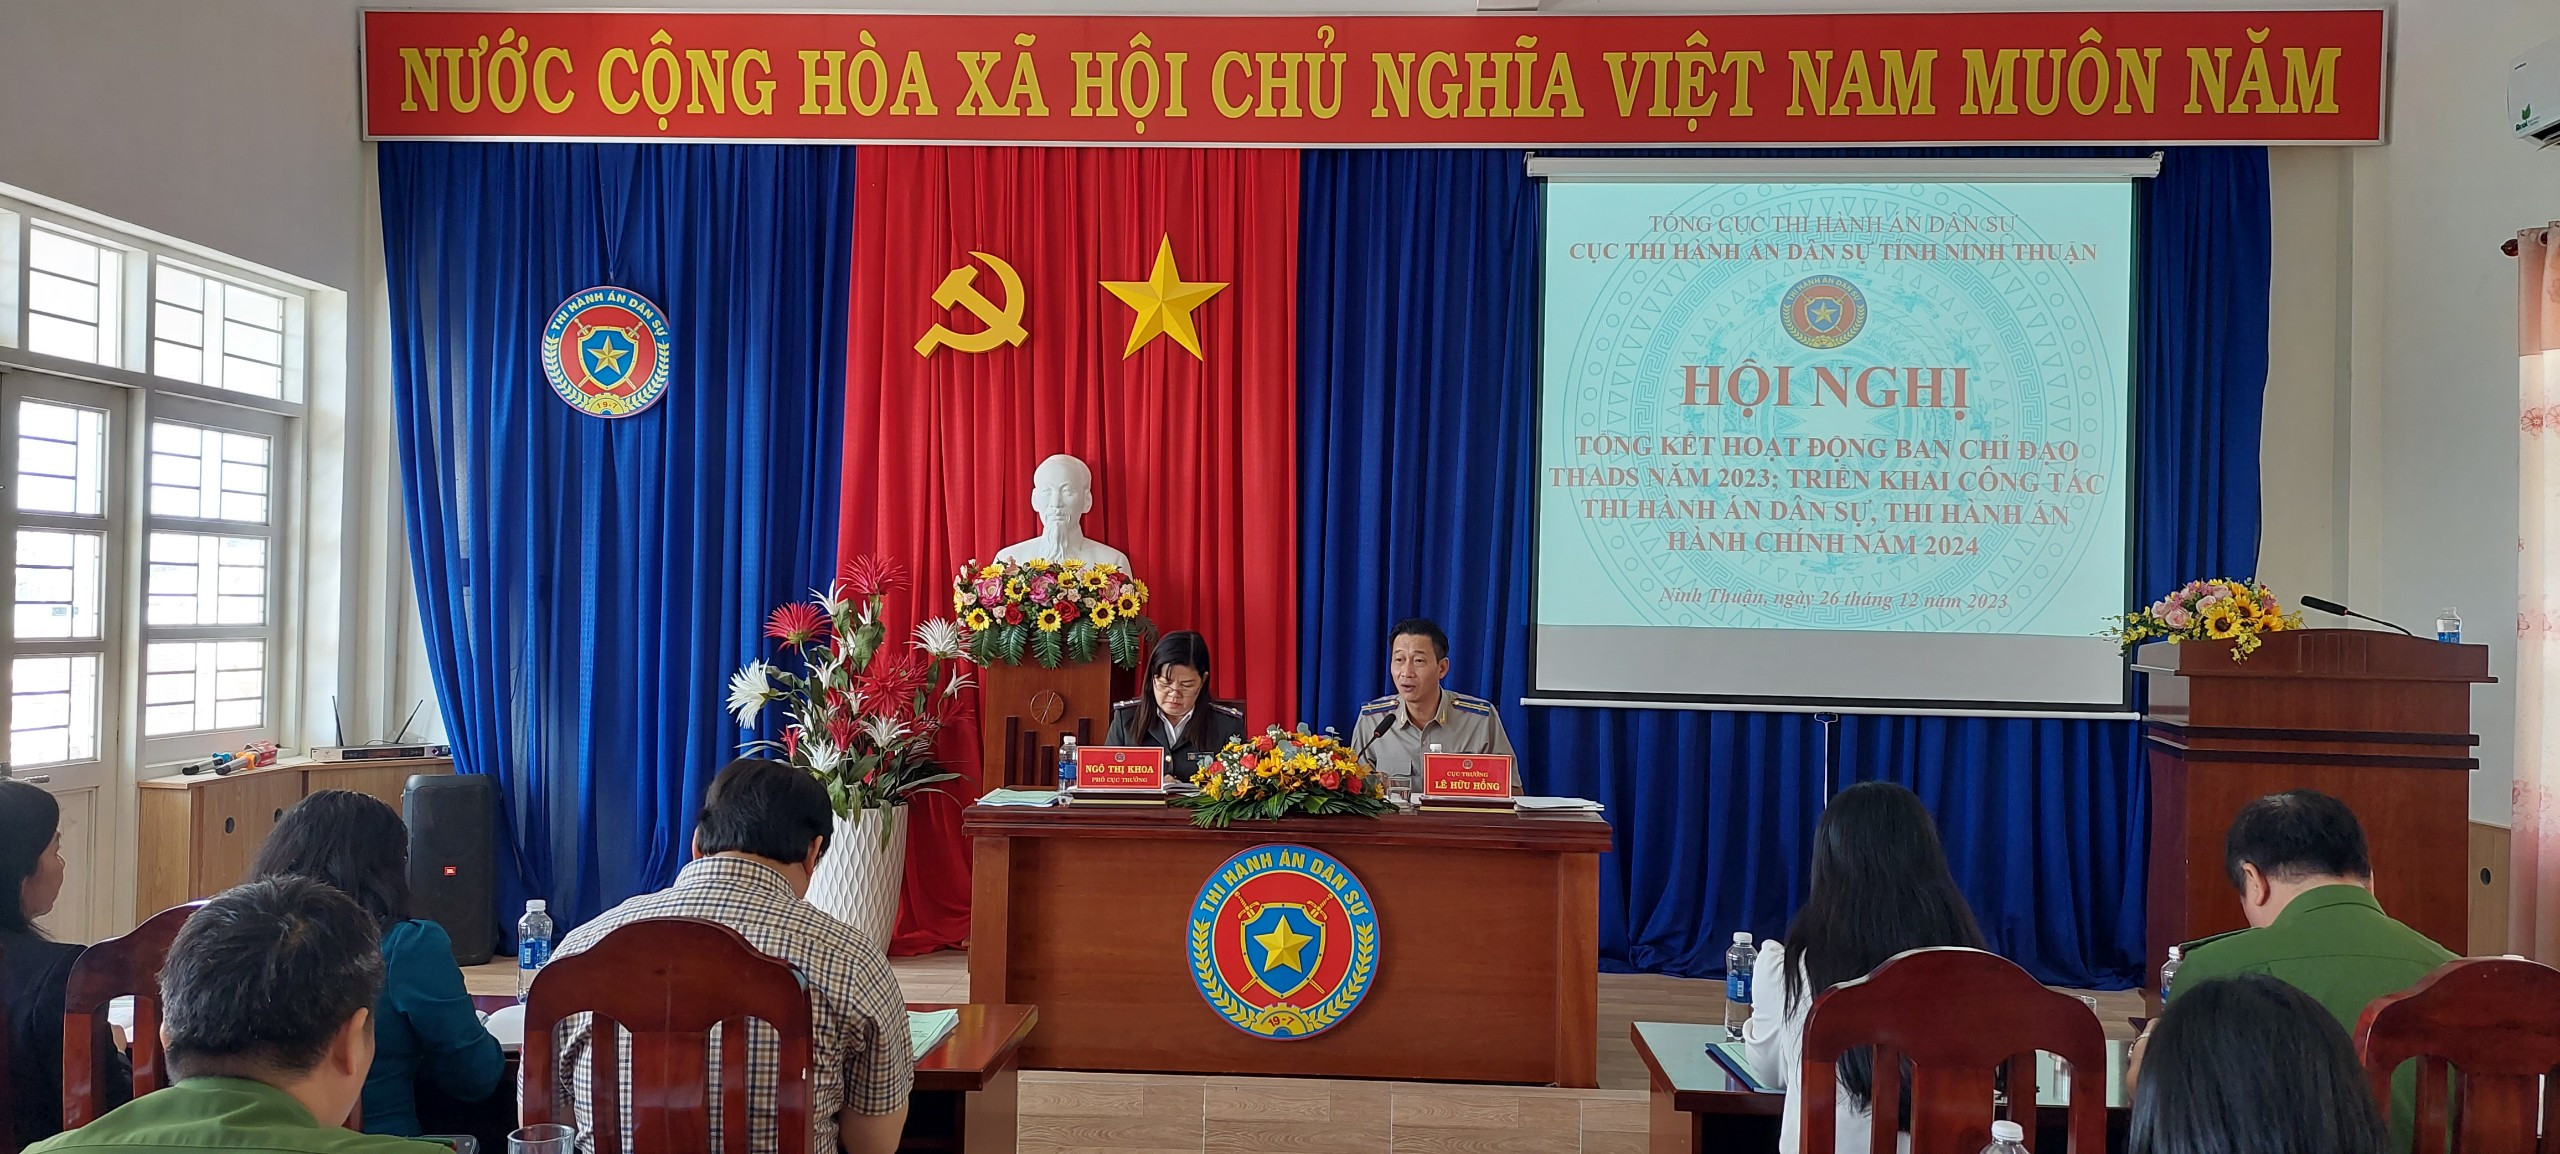 Cục Thi hành án dân sự tỉnh Ninh Thuận tổ chức hội nghị tổng kết hoạt động Ban Chỉ đạo Thi hành án dân sự và triển khai công tác thi hành án dân sự, theo dõi thi hành án hành chính năm 2024